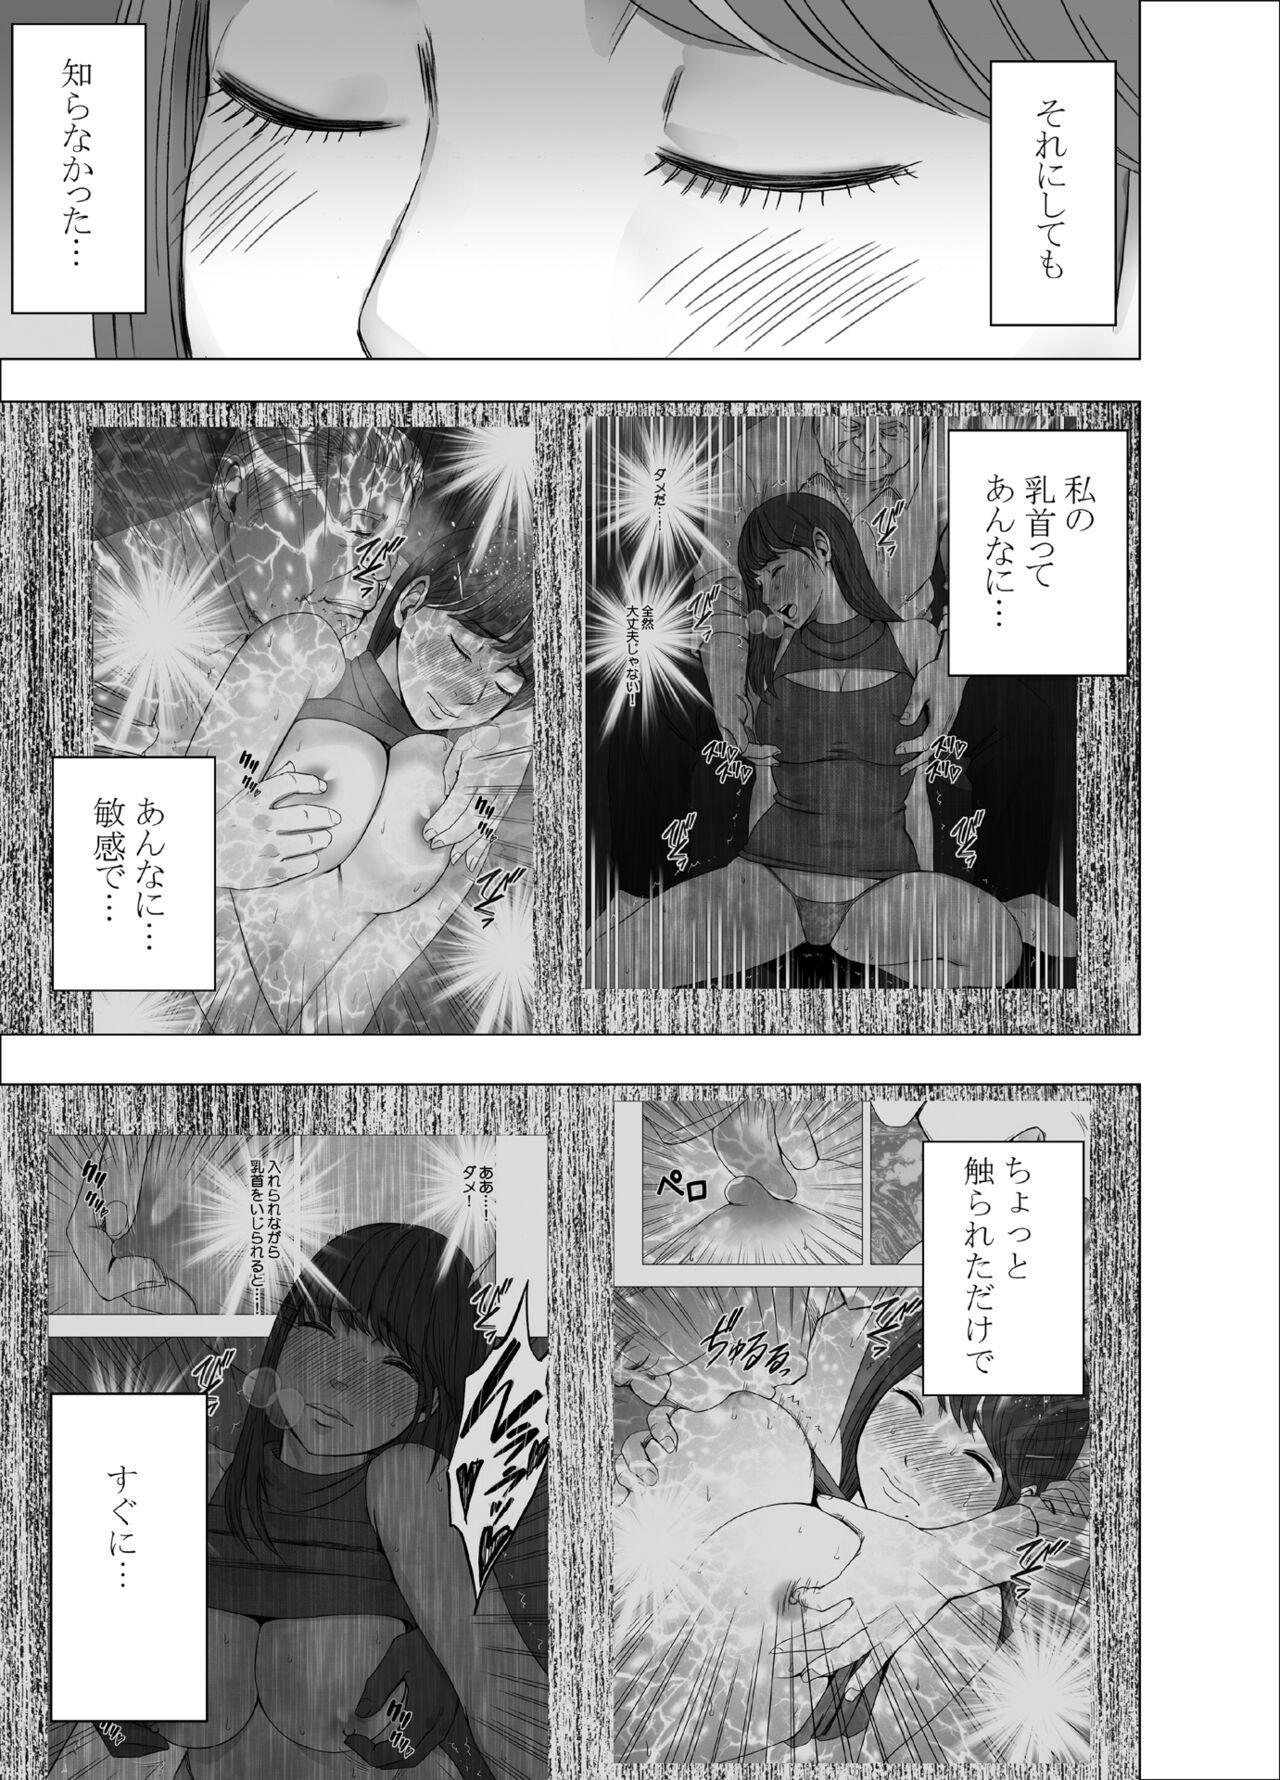 Parties Chikubi de Sokuiki suru Joshidaisei 4 - Original Leche - Page 6